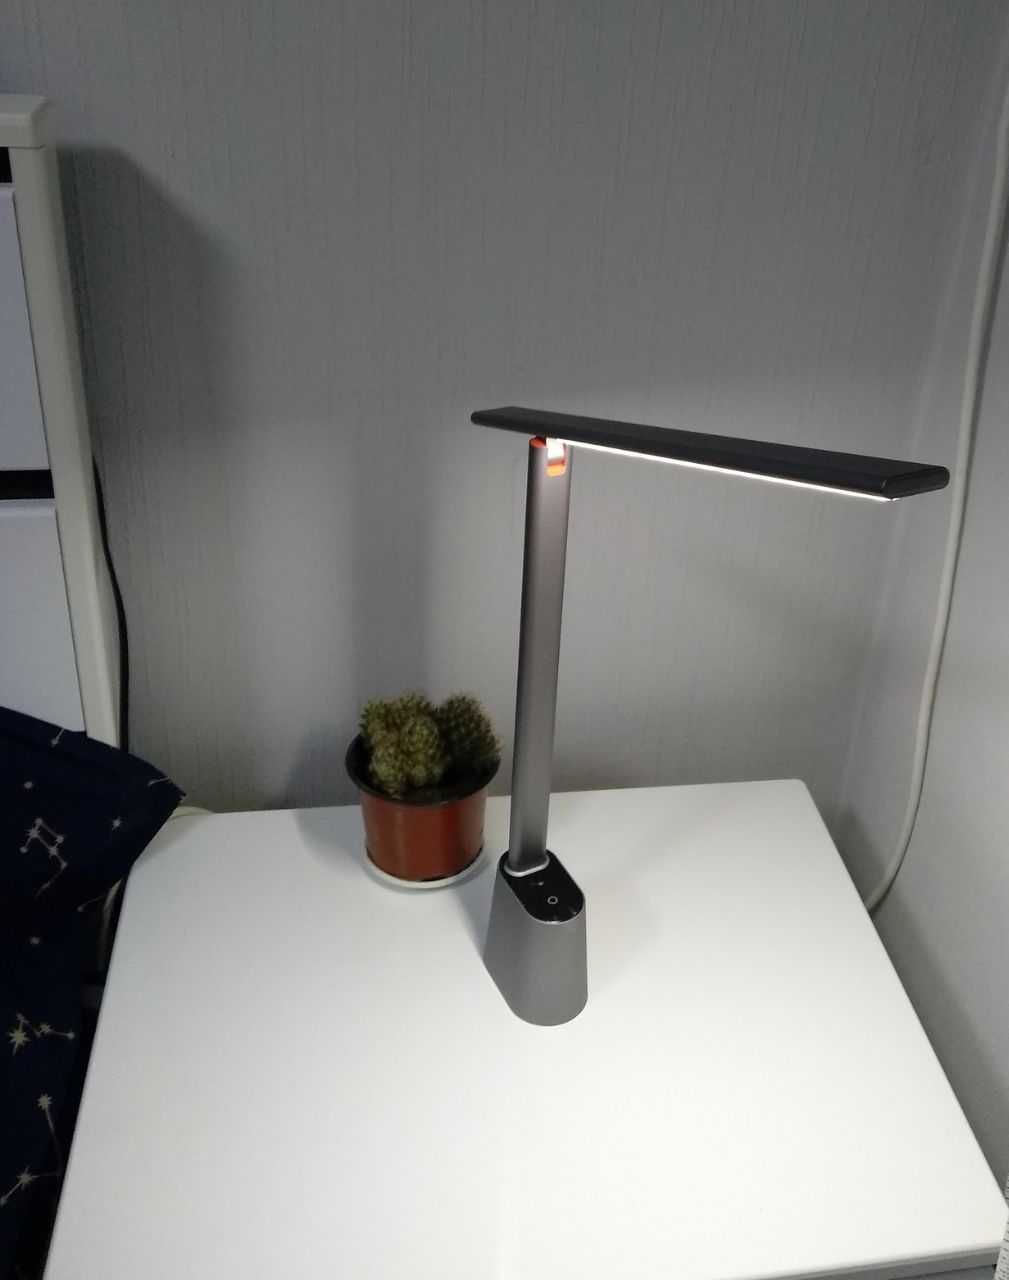 Лампа настольная, для дому, офісу, Baseus розумна лампа.